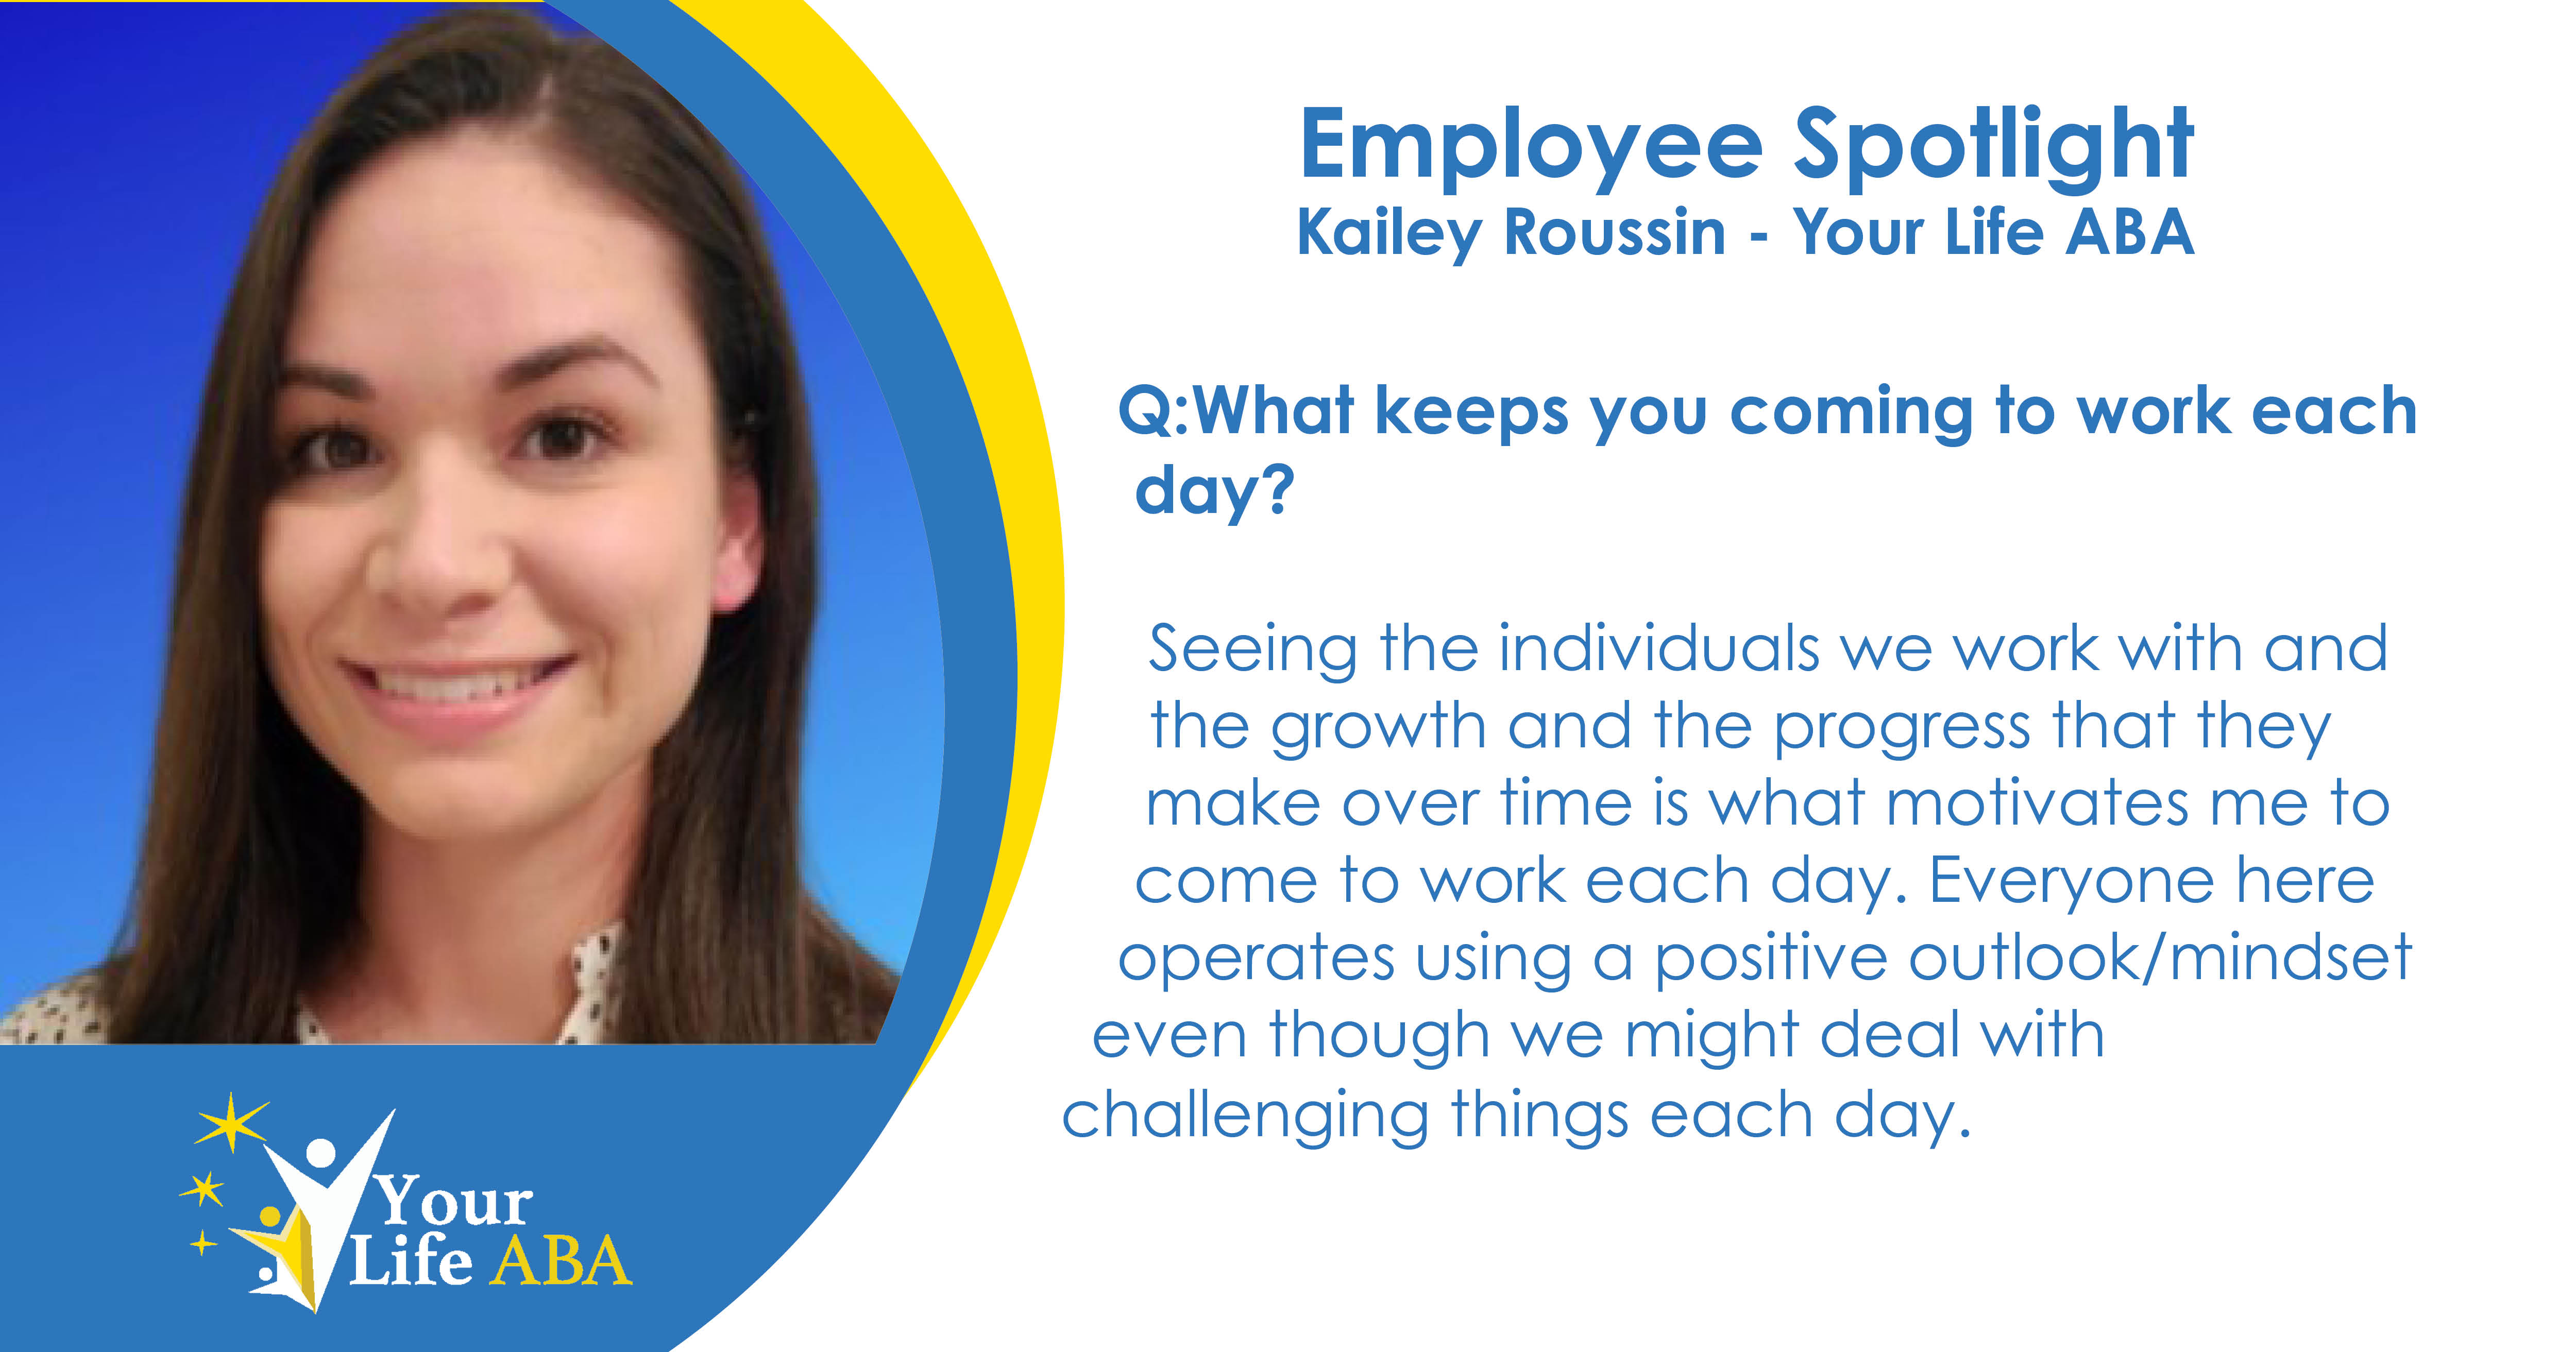 Employee Spotlight - Kailey Roussin